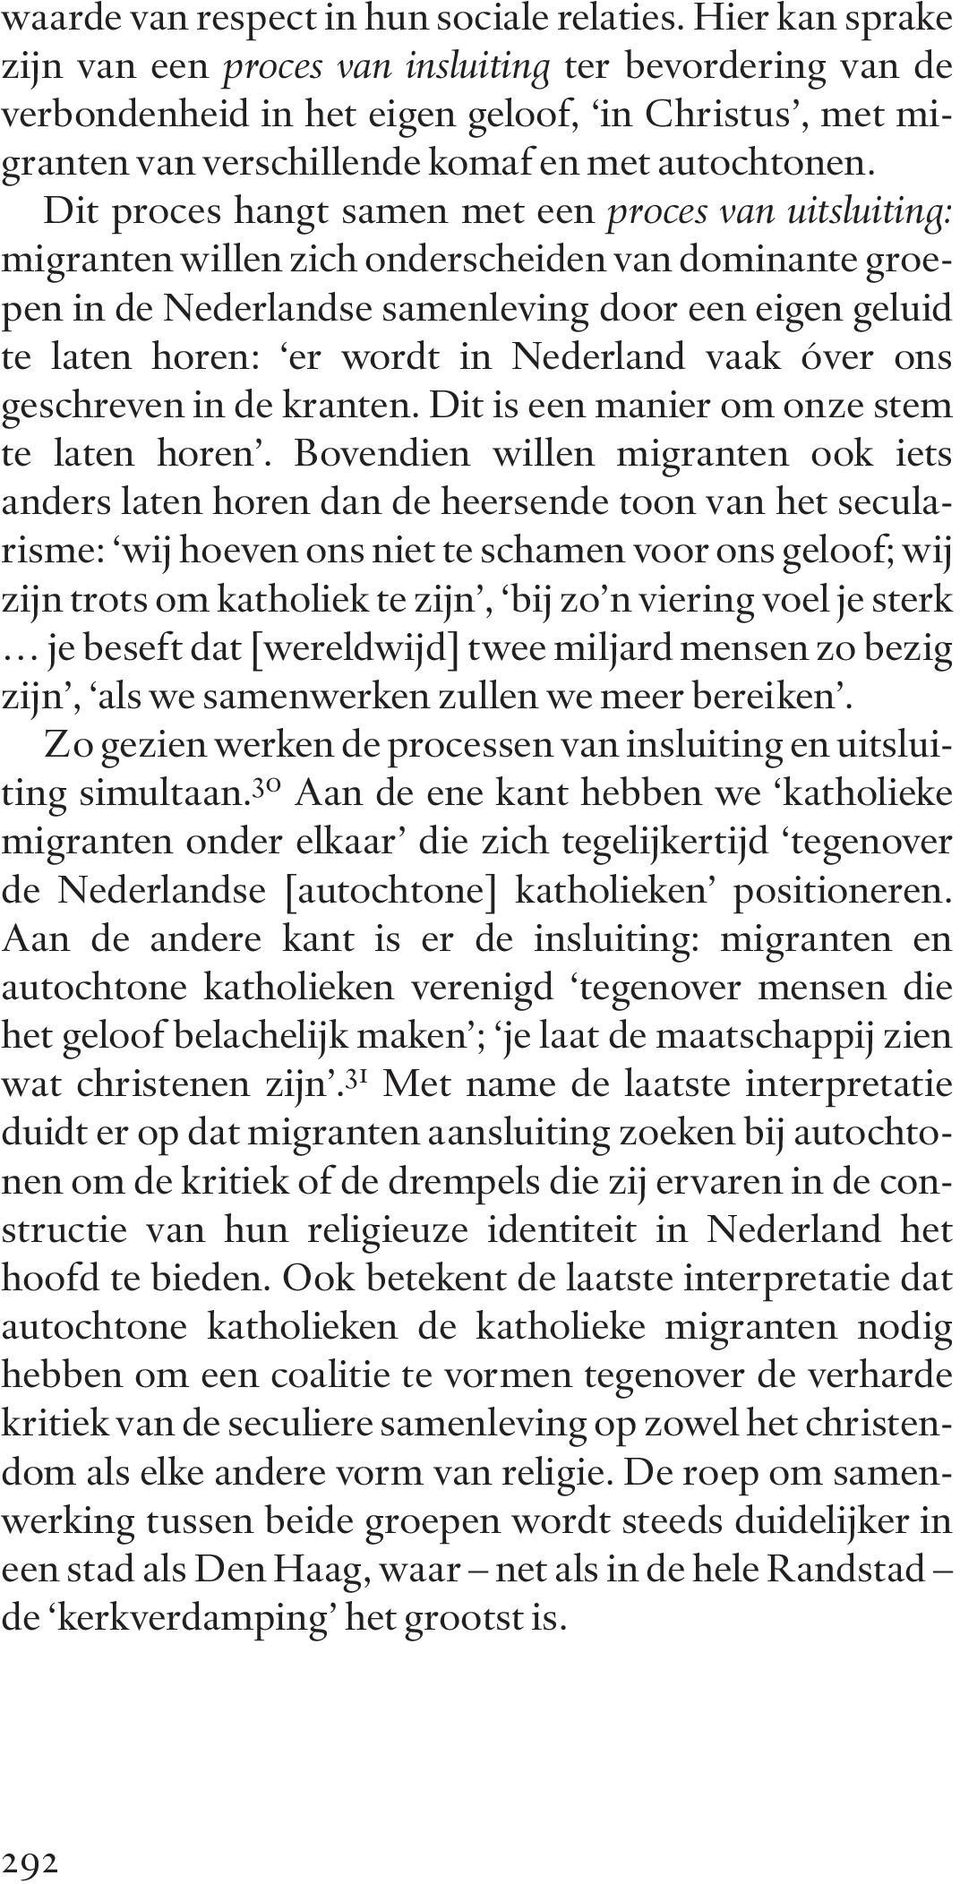 Dit proces hangt samen met een proces van uitsluiting: migranten willen zich onderscheiden van dominante groepen in de Nederlandse samenleving door een eigen geluid te laten horen: er wordt in